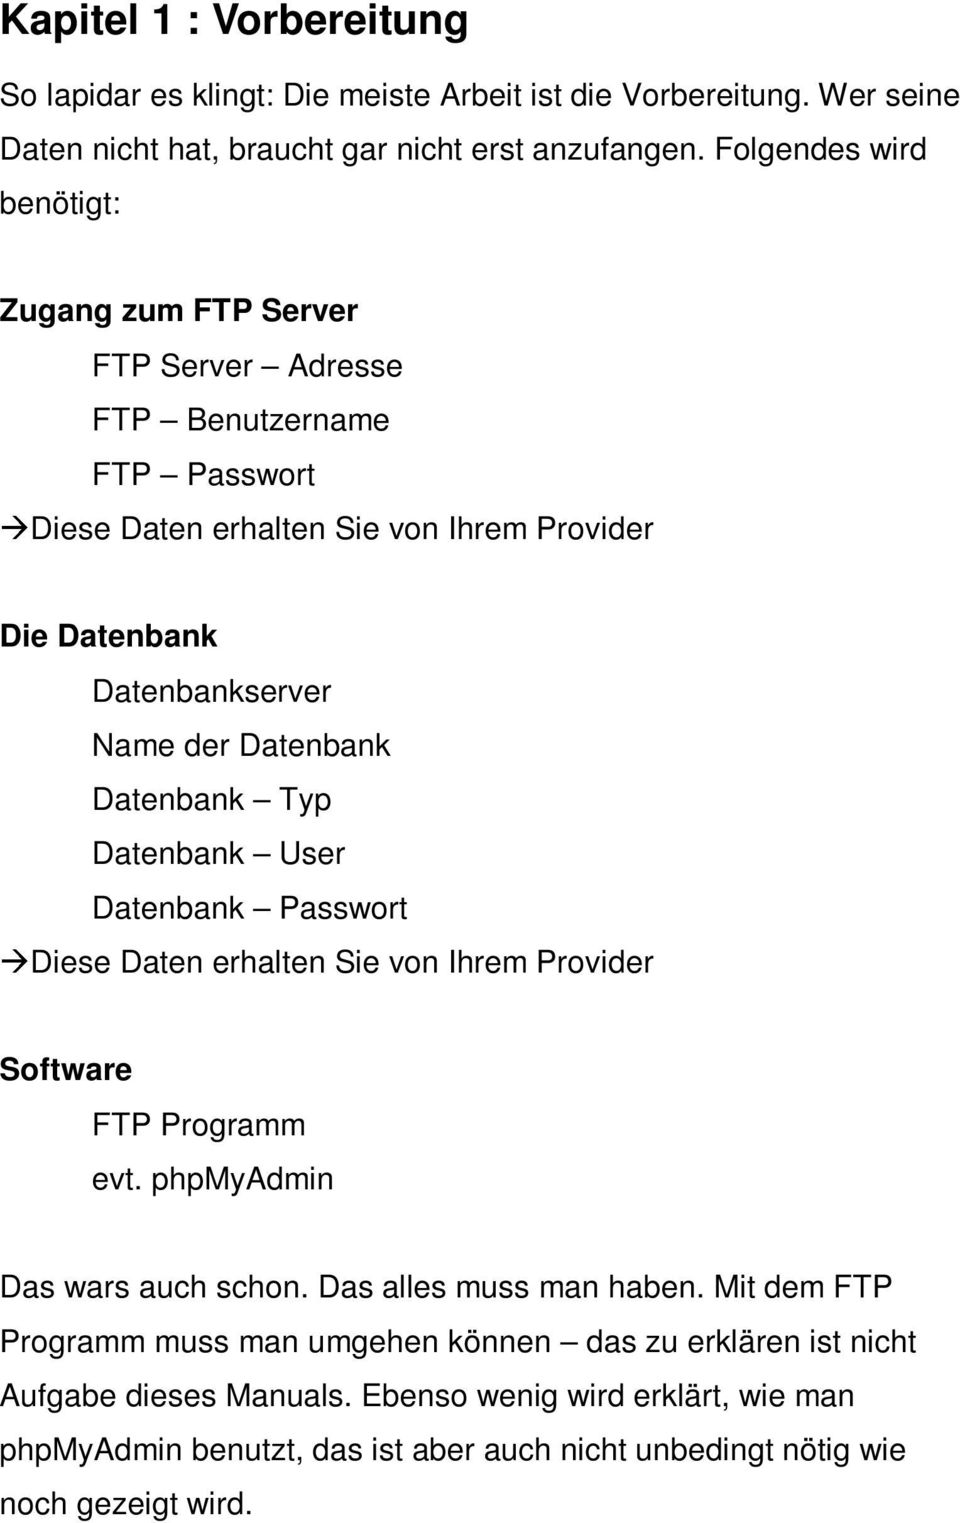 Datenbank Datenbank Typ Datenbank User Datenbank Passwort Diese Daten erhalten Sie von Ihrem Provider Software FTP Programm evt. phpmyadmin Das wars auch schon.